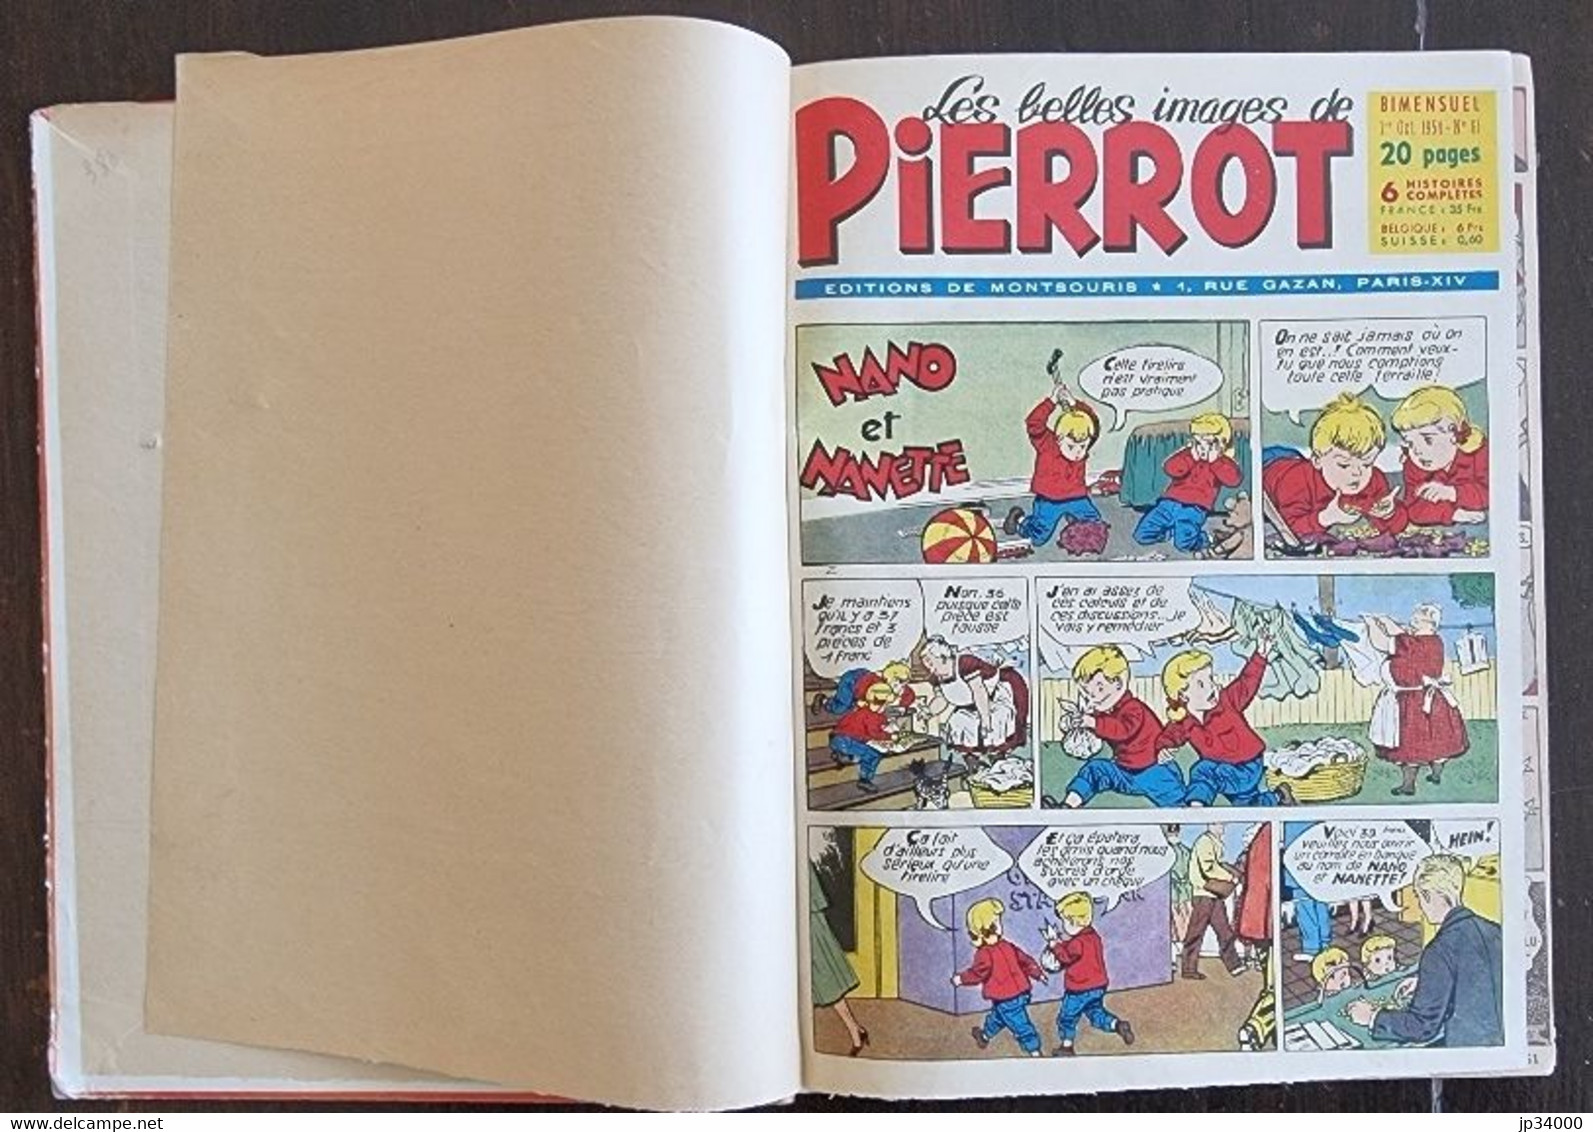 Les Belles Images De PIERROT. Reliure N° 7 (N°61 A 70) Publié En 1955 (Calvo, Nano Et Nanette..) - Pierrot